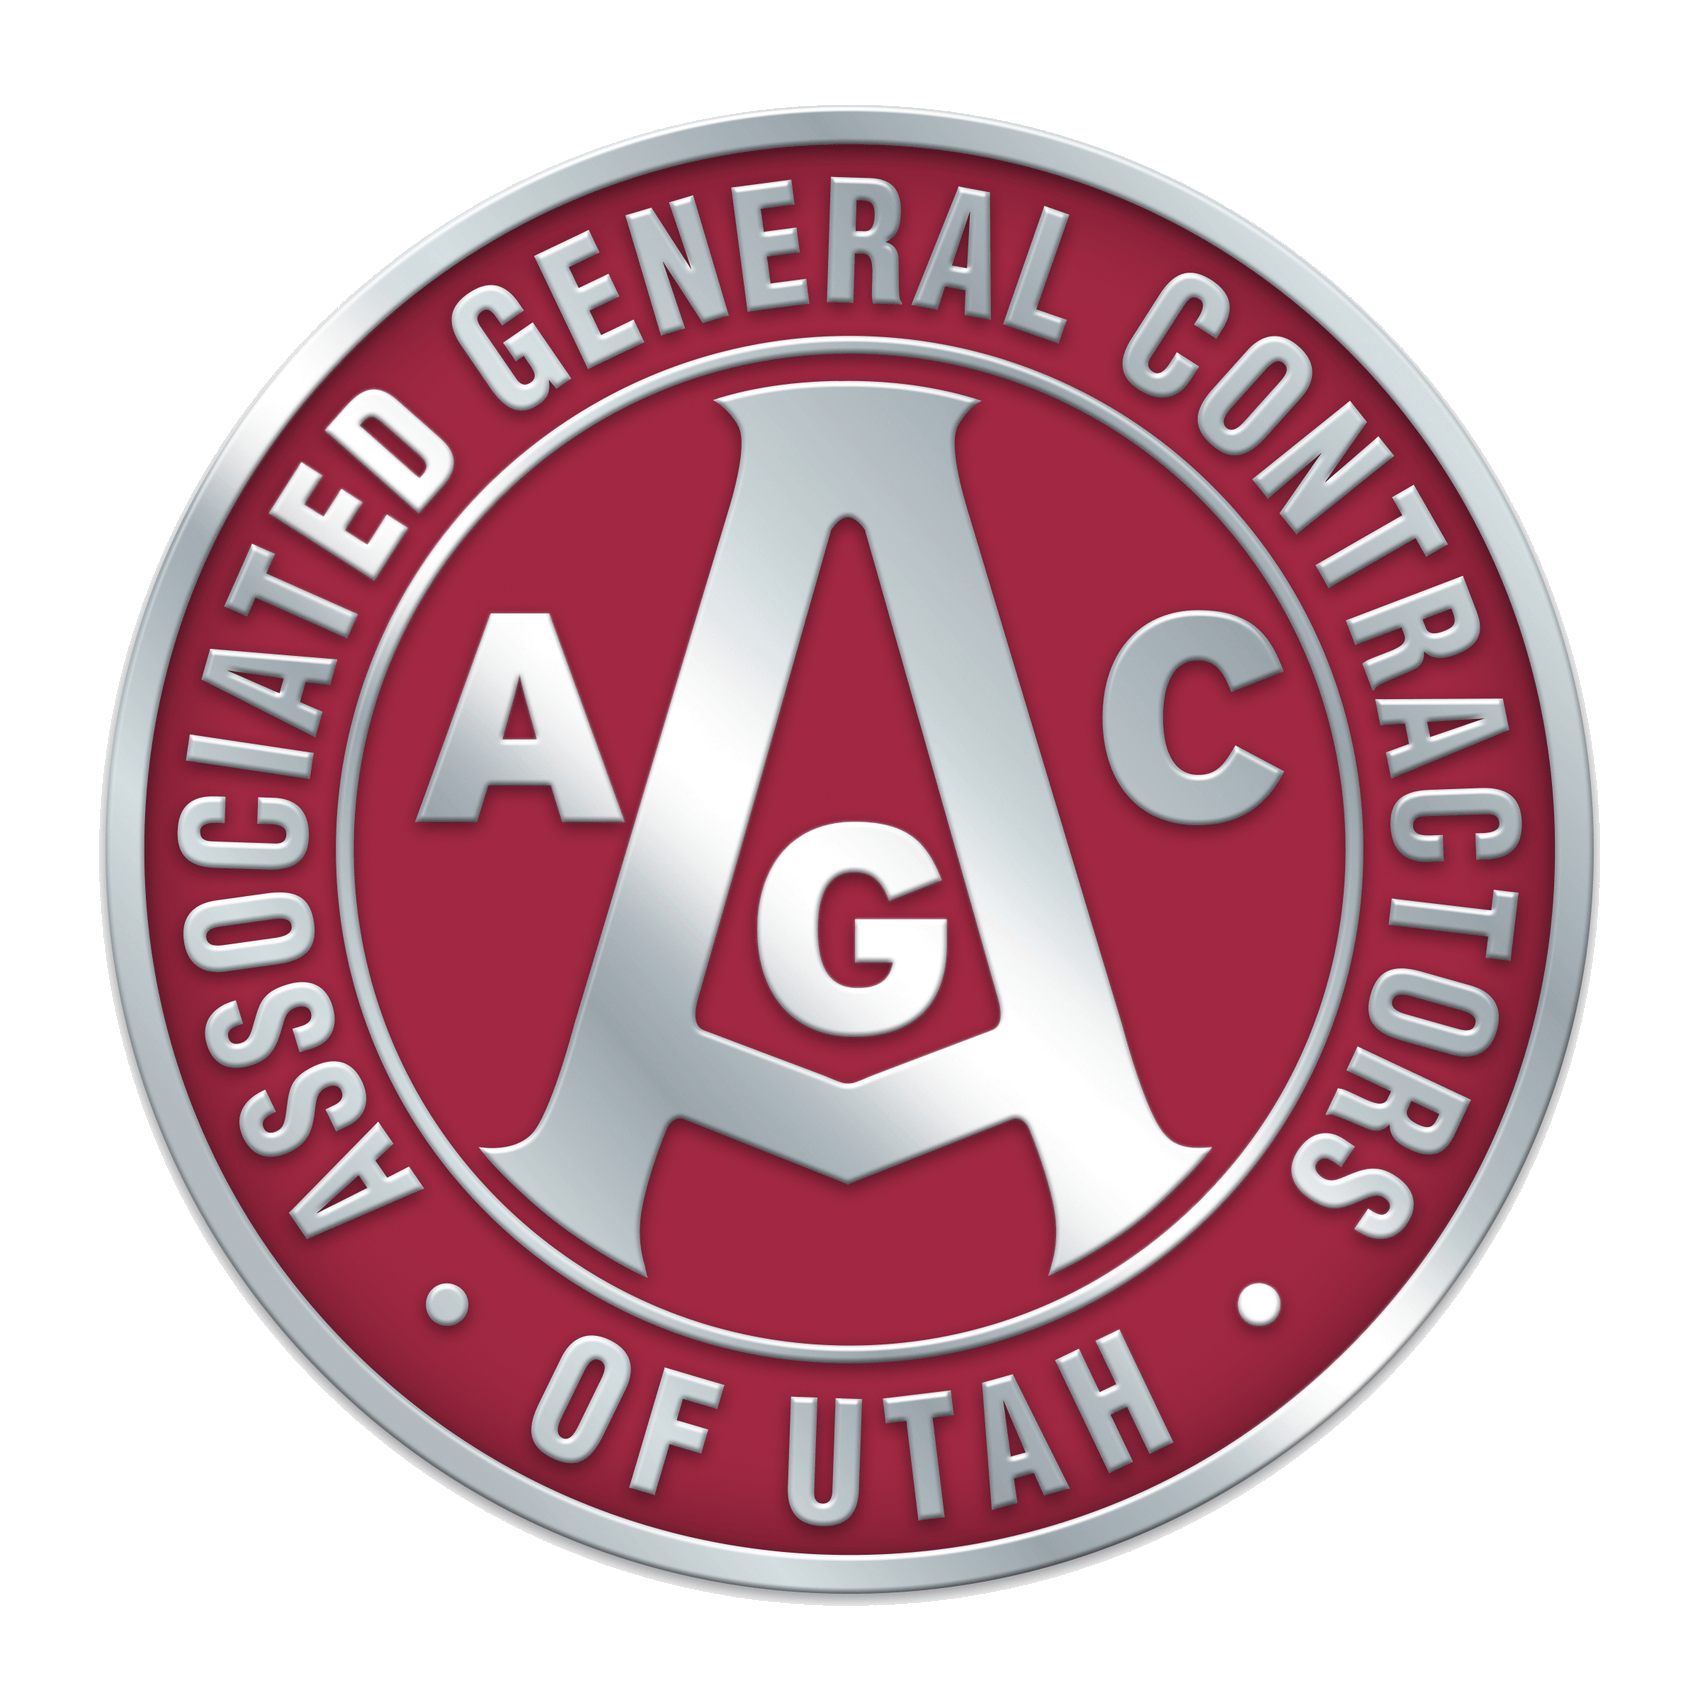 AGC Logo - Home - Associated General Contractors of Utah, UTAH